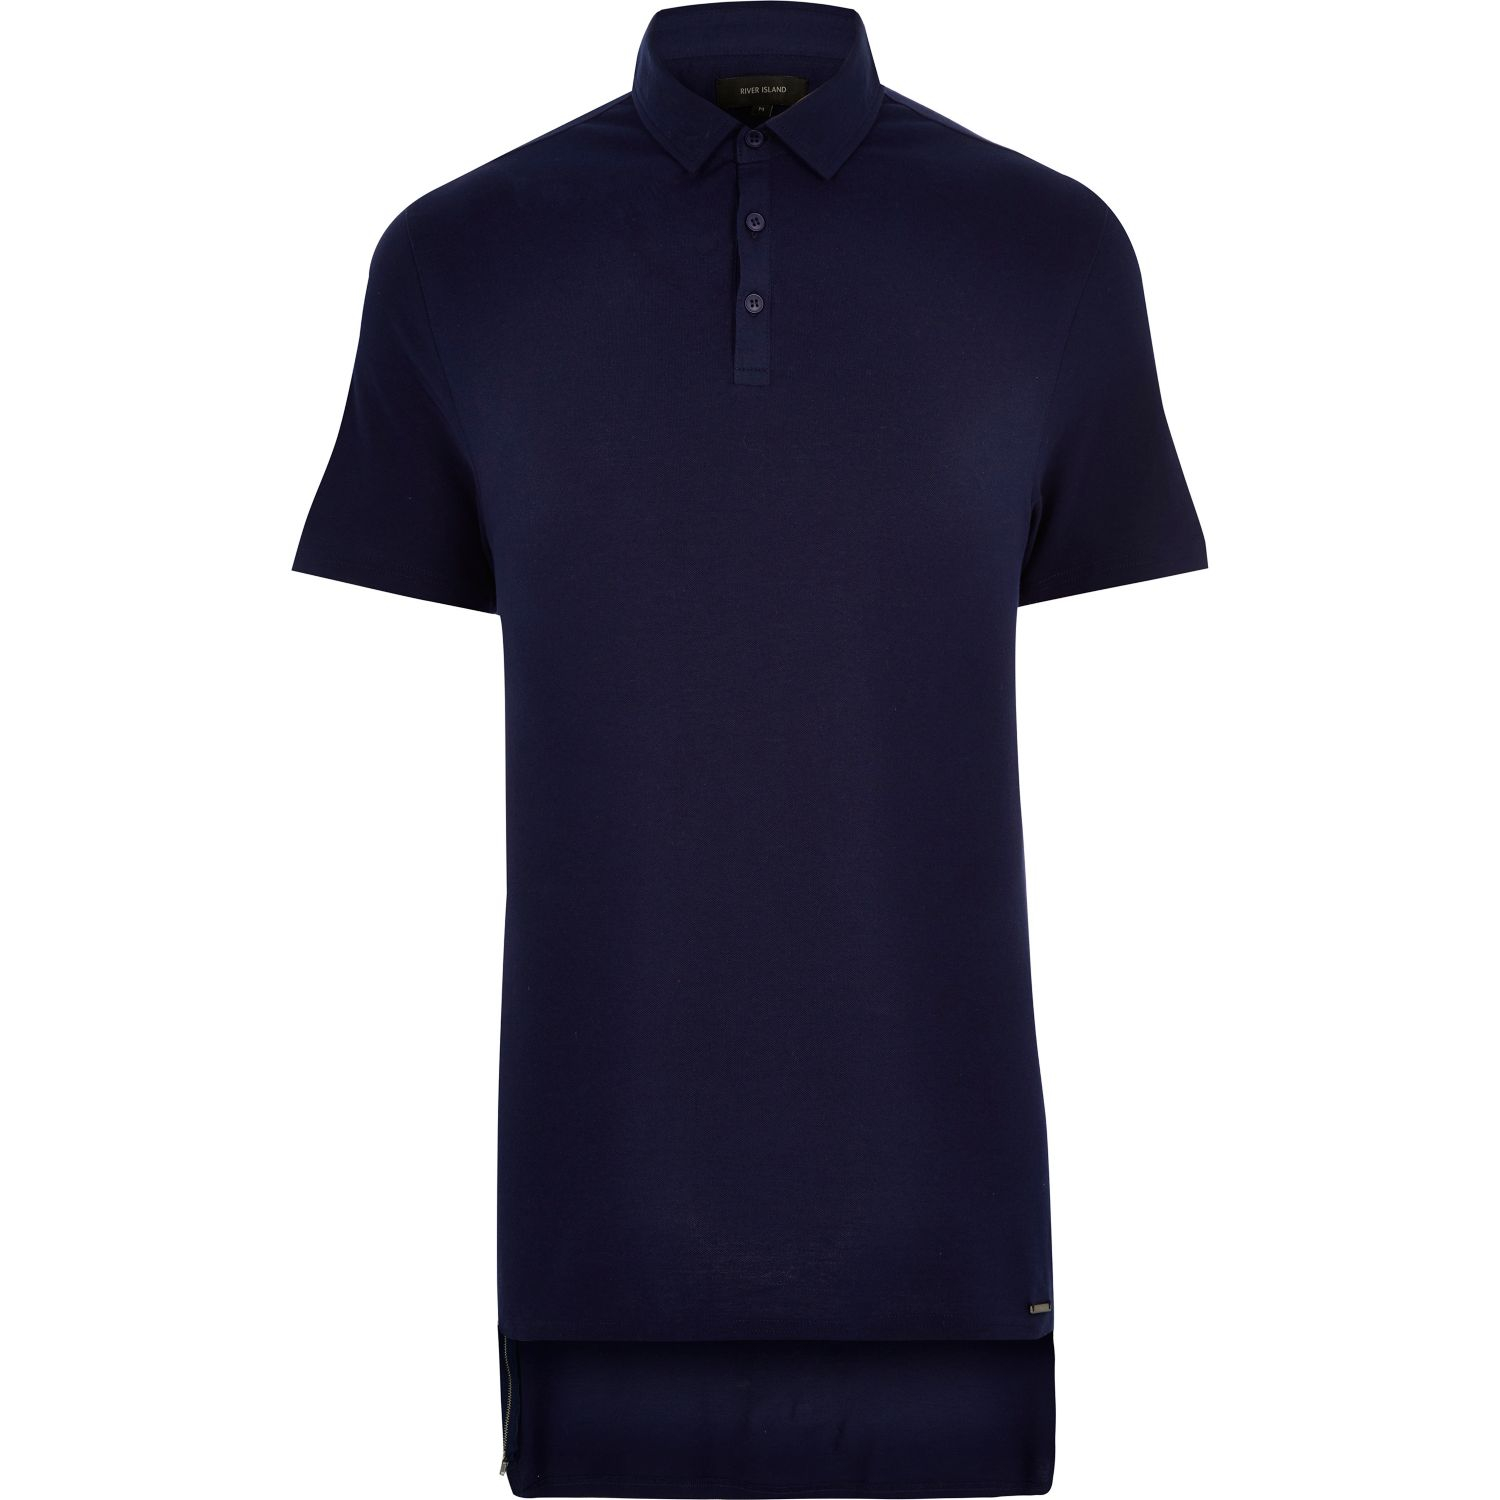 Lyst - River Island Navy Longer Length Zip Side Polo Shirt in Blue for Men